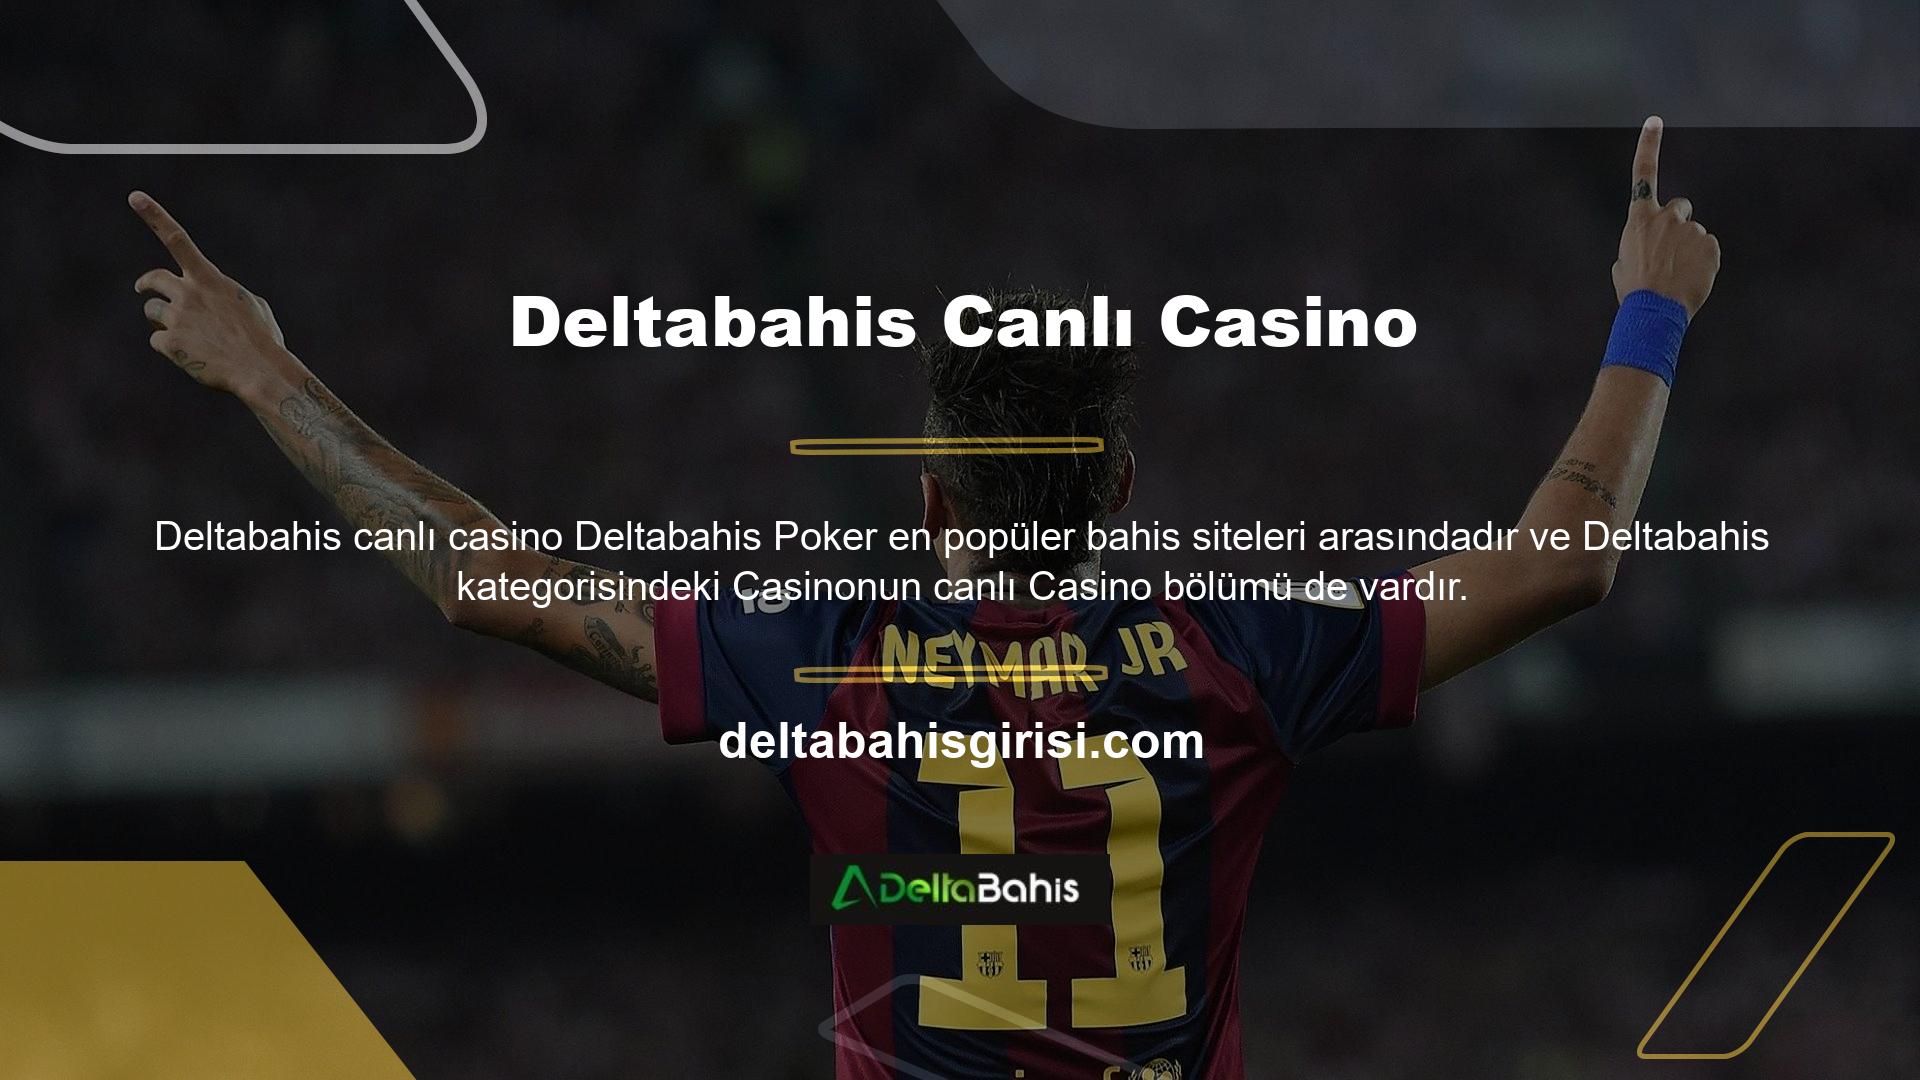 Kullanıcılar, Deltabahis canlı casino bölümünde gerçek parayla oynayanlar ve rakiplerle heyecan verici çevrimiçi oyunların keyfini çıkarabilirler